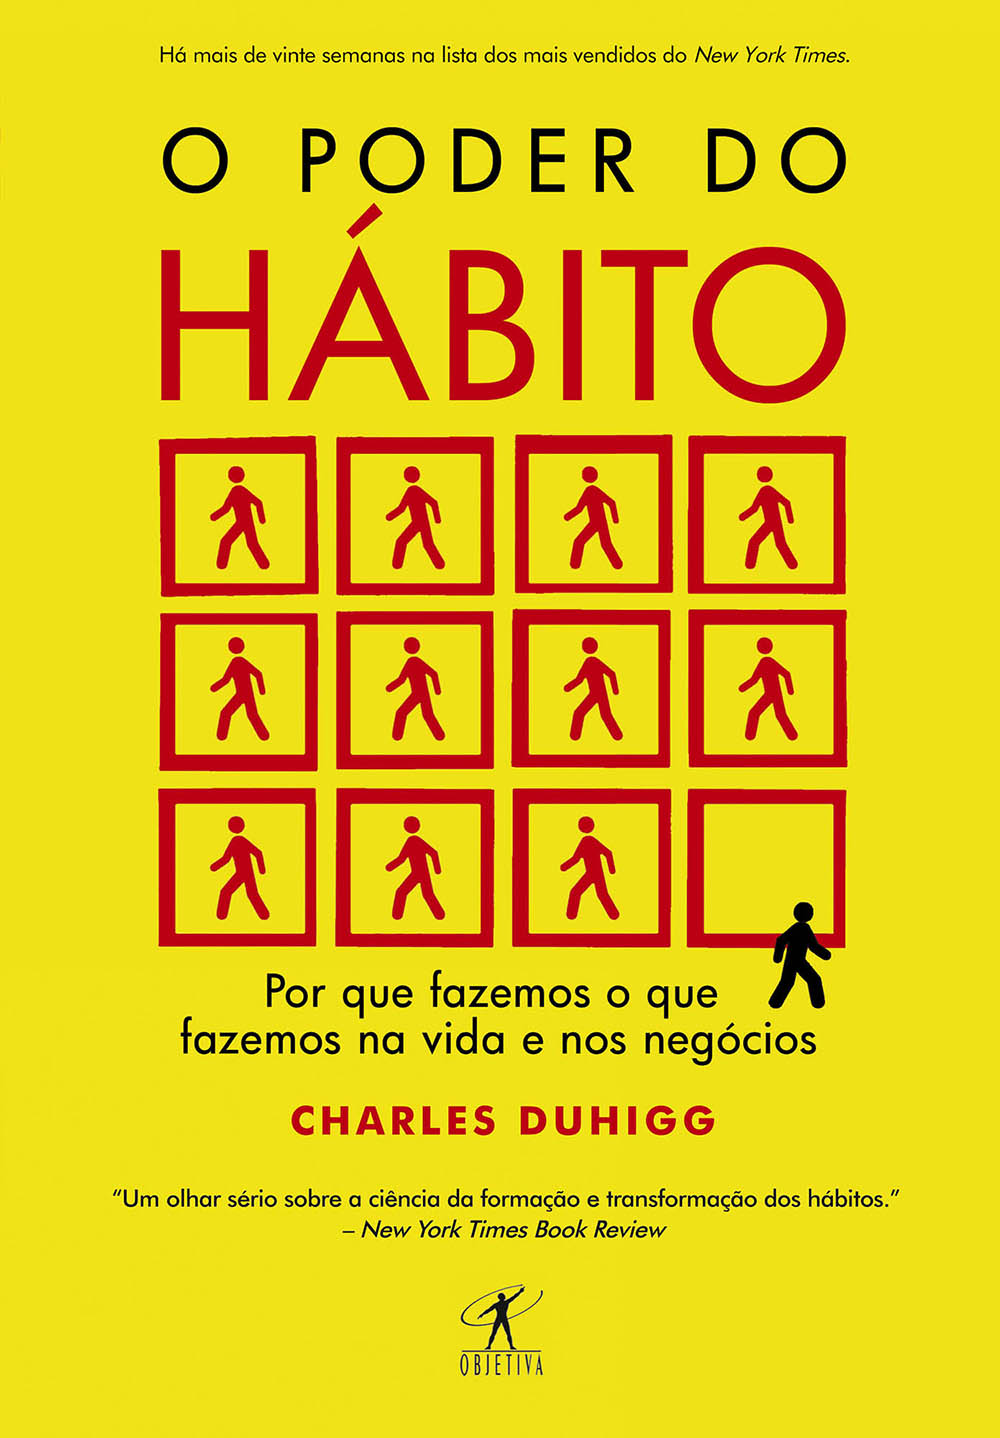 Download O Poder do Habito Charles Duhigg em ePUB mobi PDF2